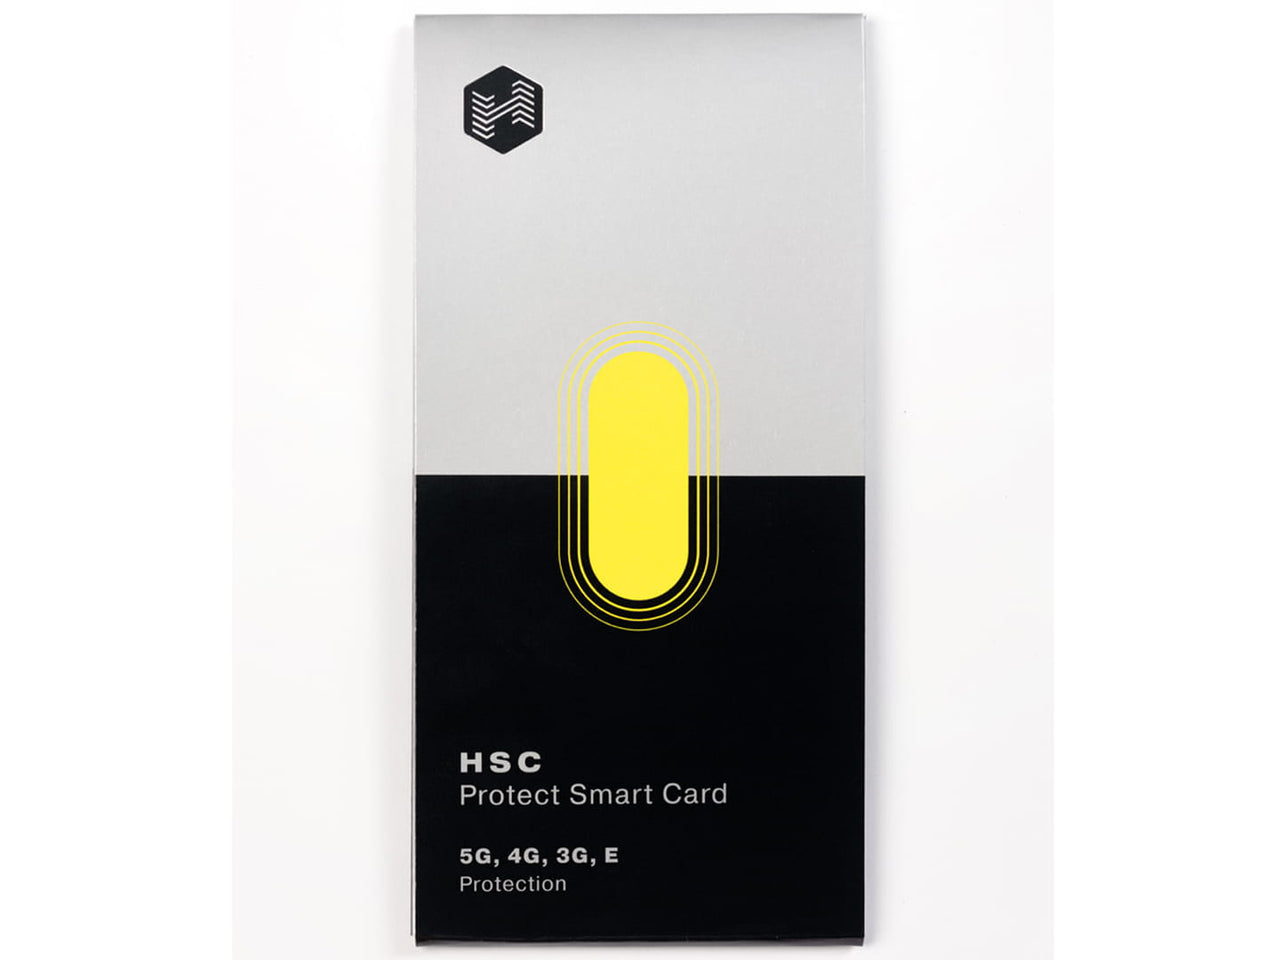 HSC Protect Smartcard | Lassen Sie sich schützen und führen Sie ein gesünderes Leben